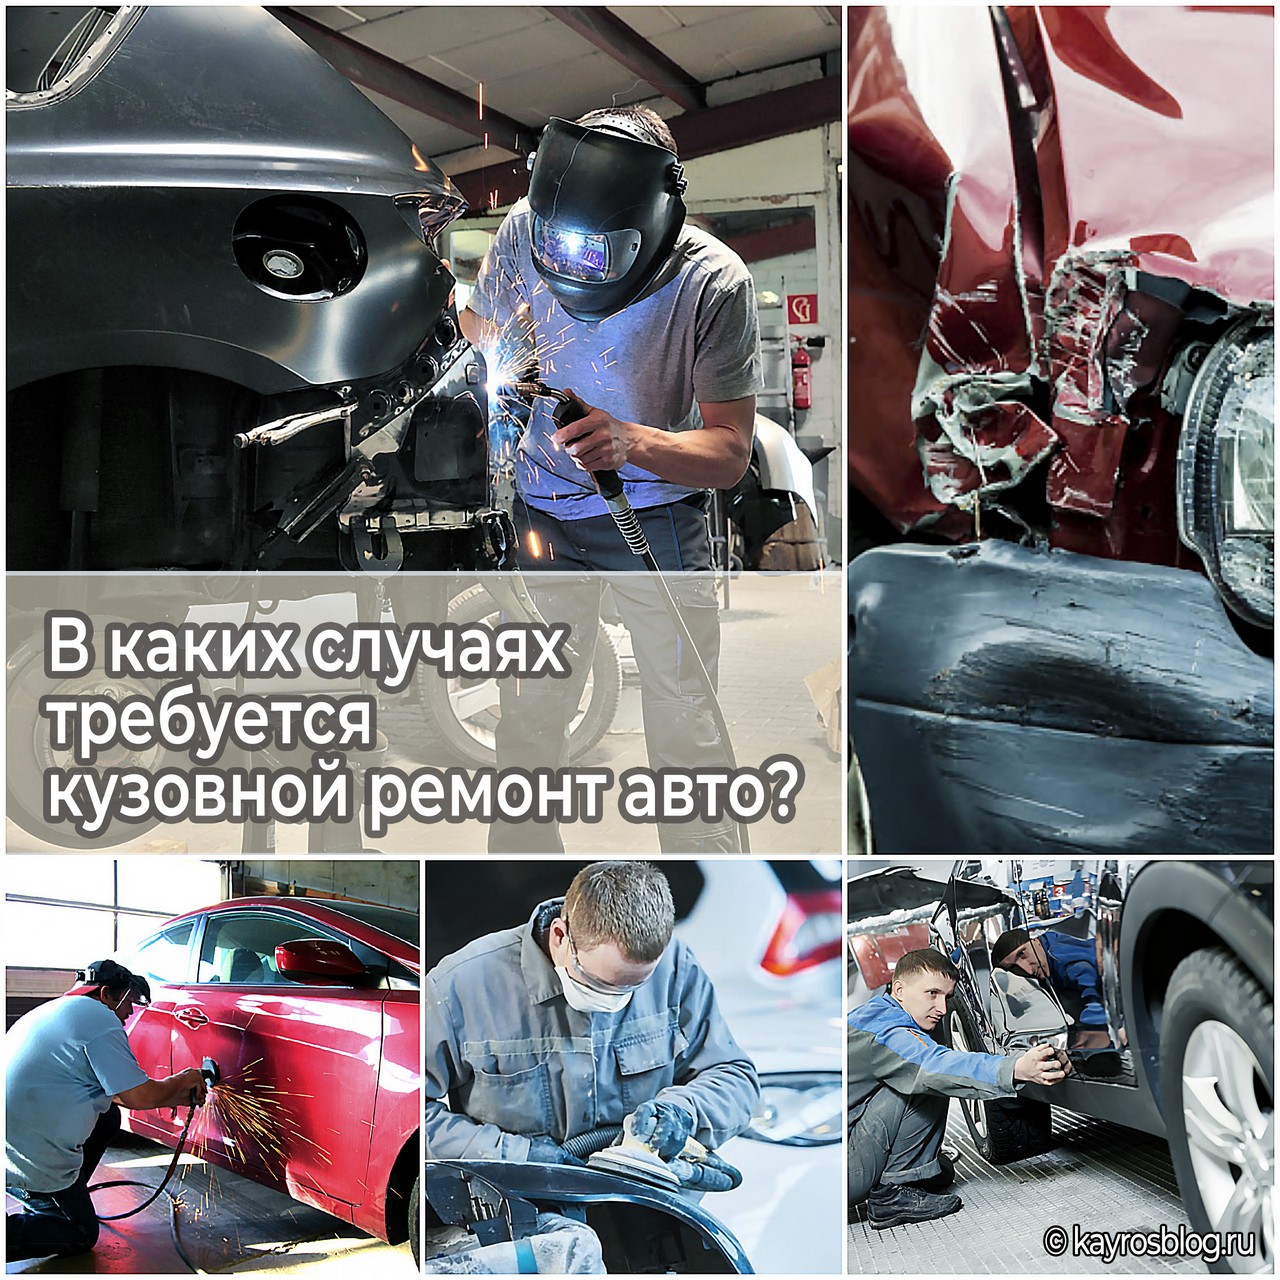 В каких случаях требуется кузовной ремонт авто